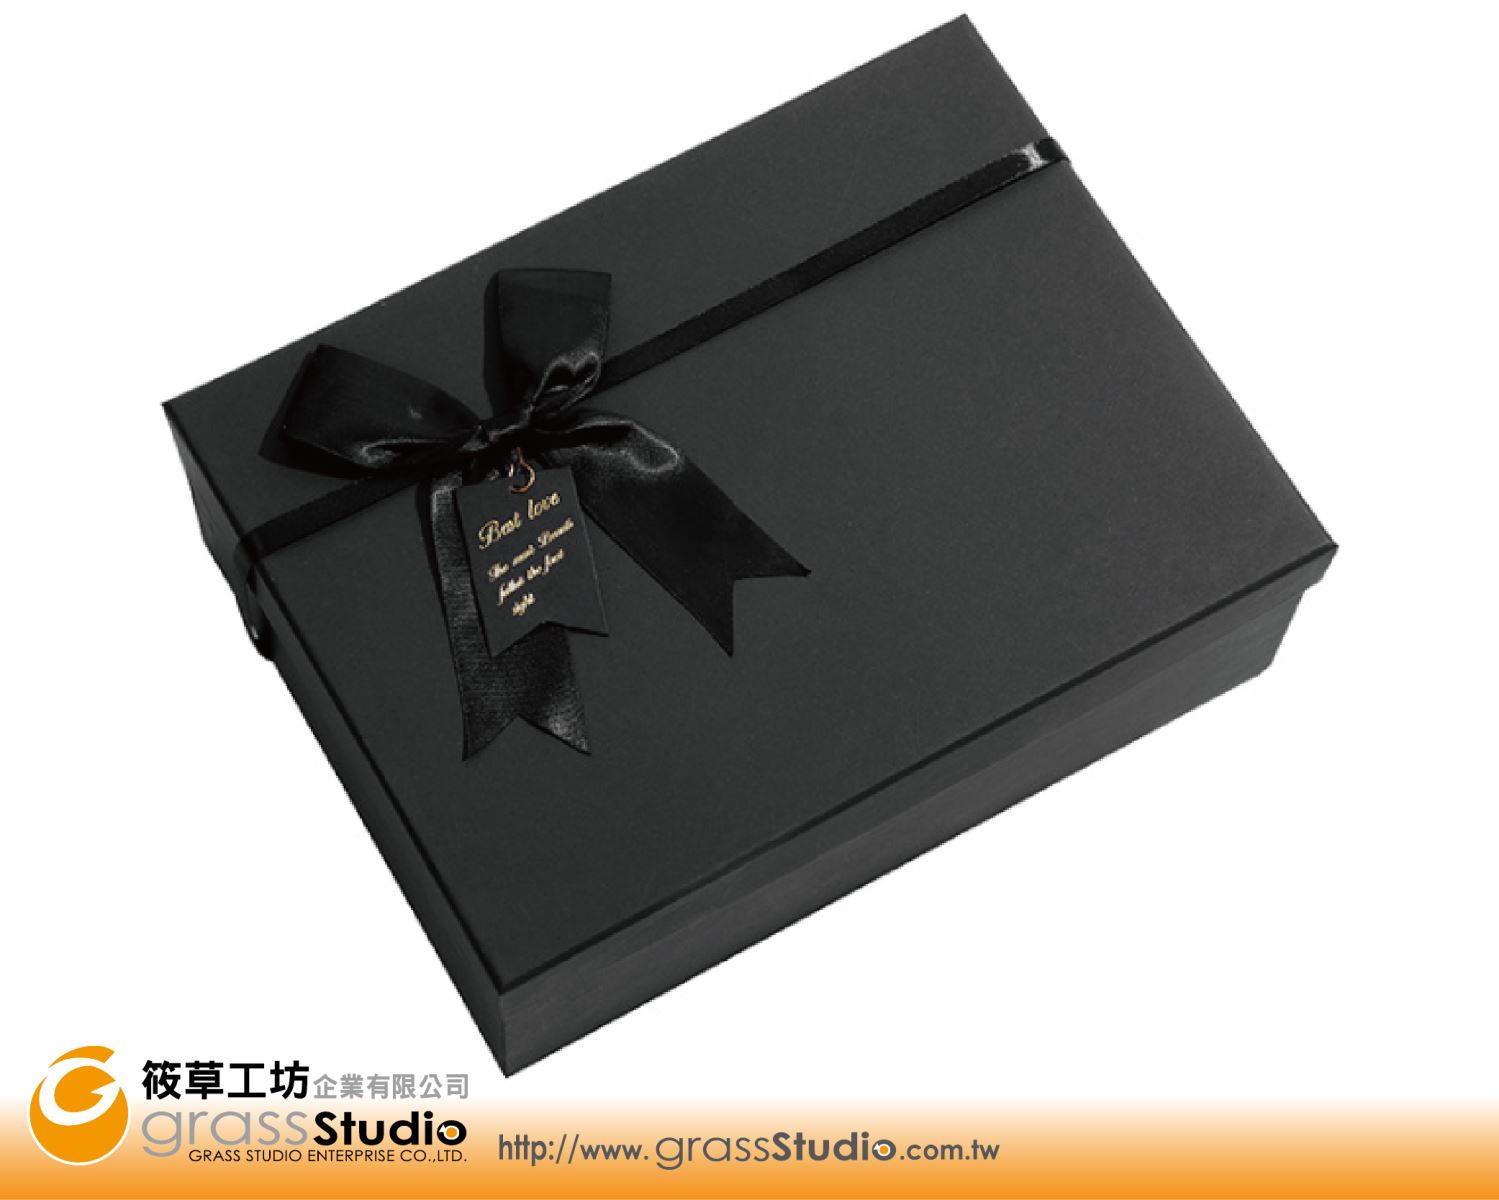 黑色蝴蝶結禮品盒(H)